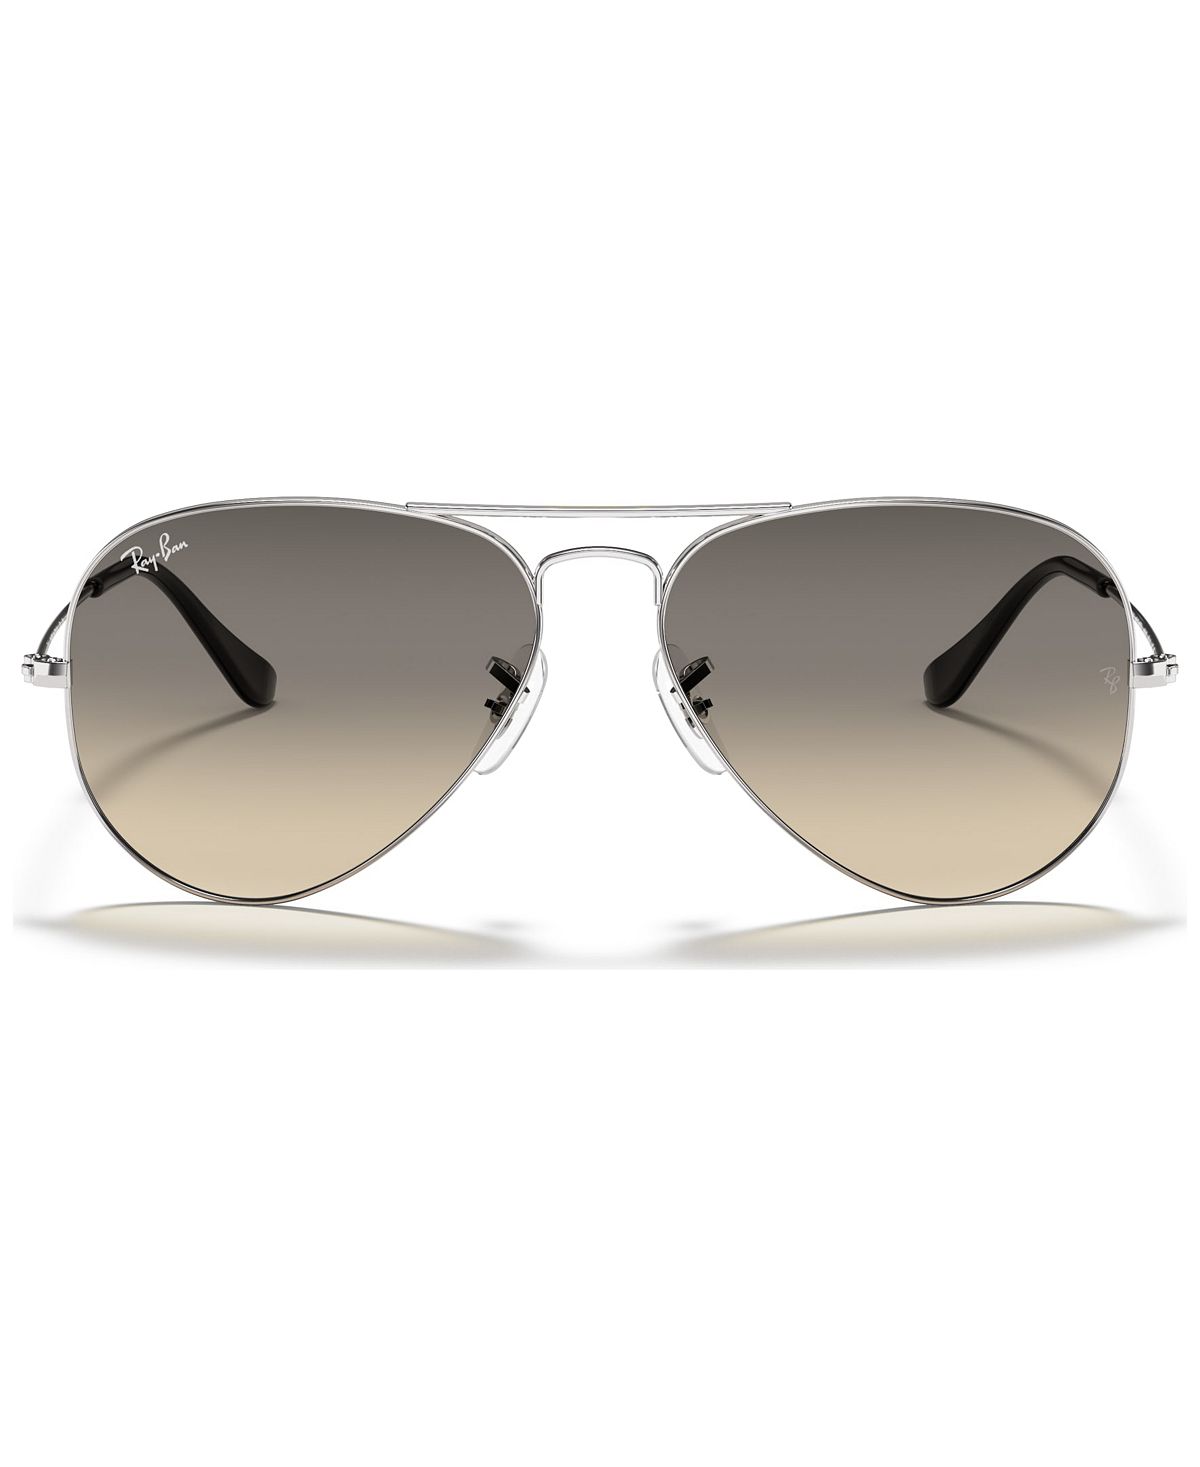 Солнцезащитные очки, rb3025 aviator gradient Ray-Ban, мульти фото